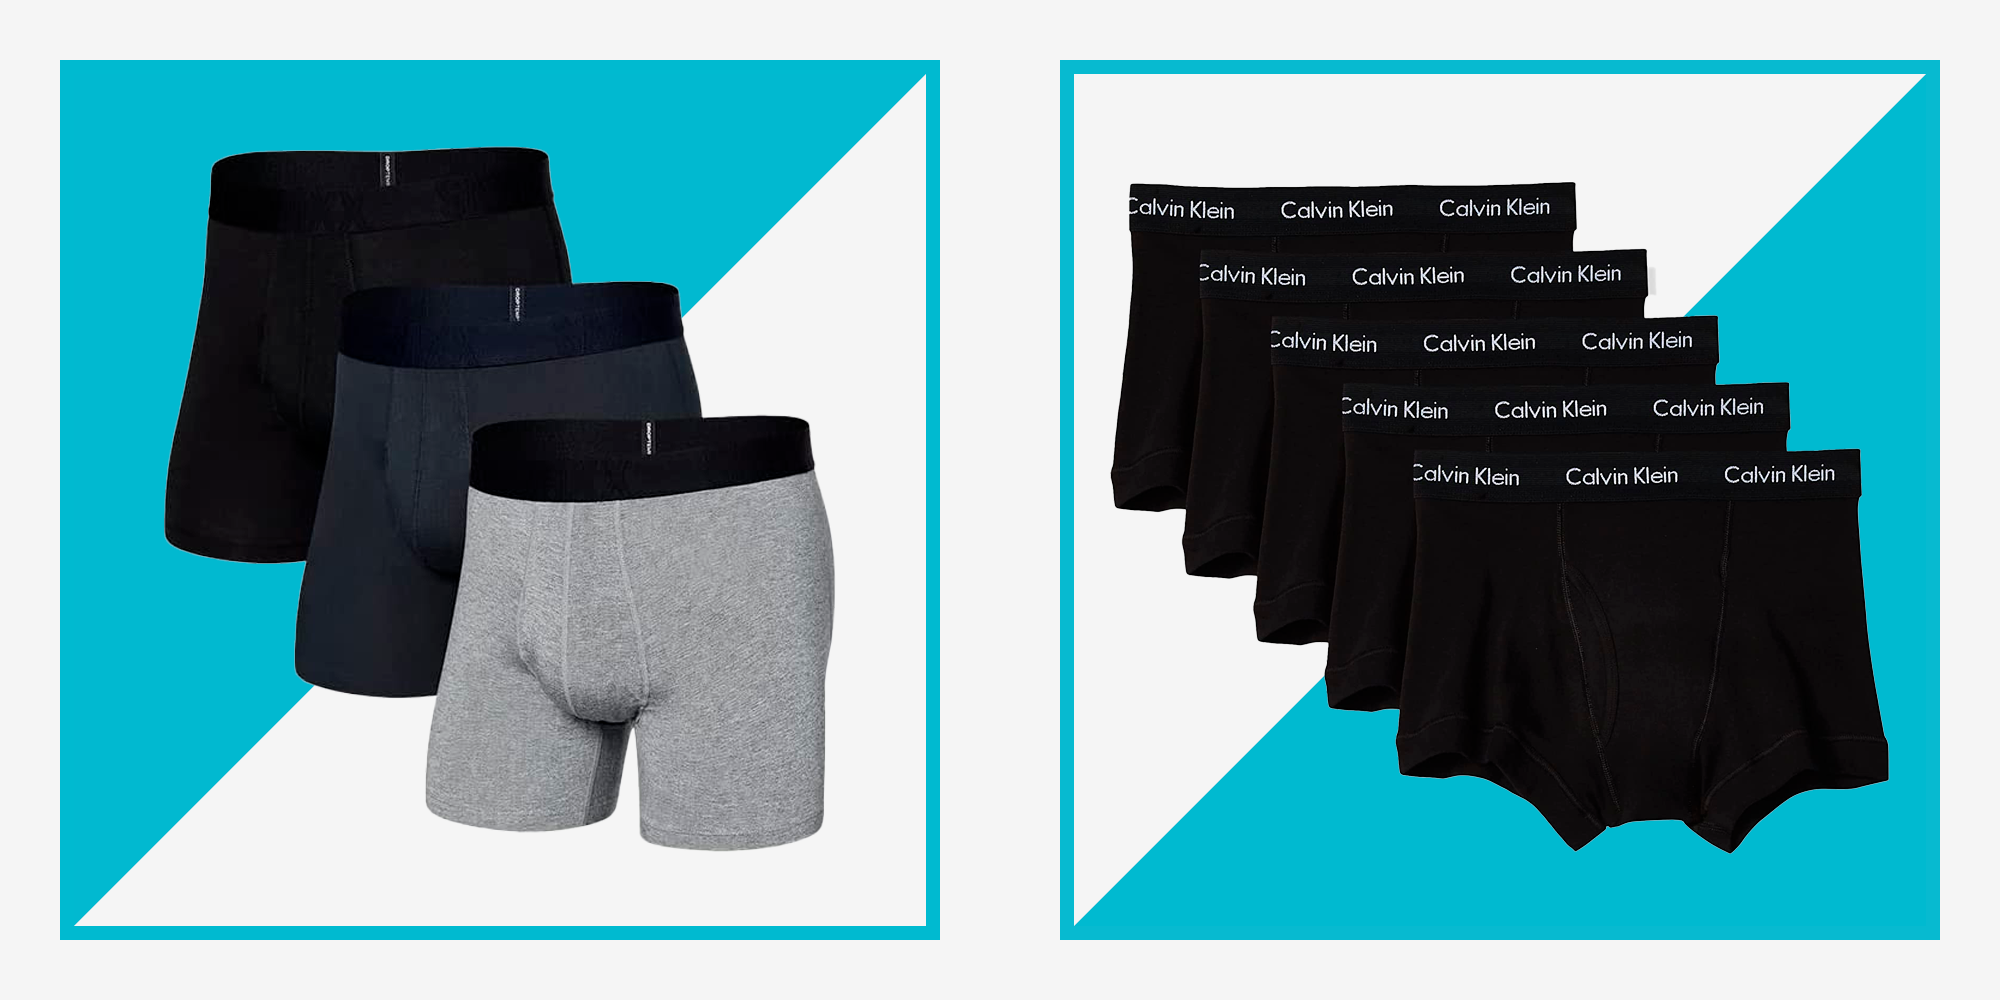 Descubrir 87+ imagen calvin klein men's underwear amazon - Thptnganamst ...